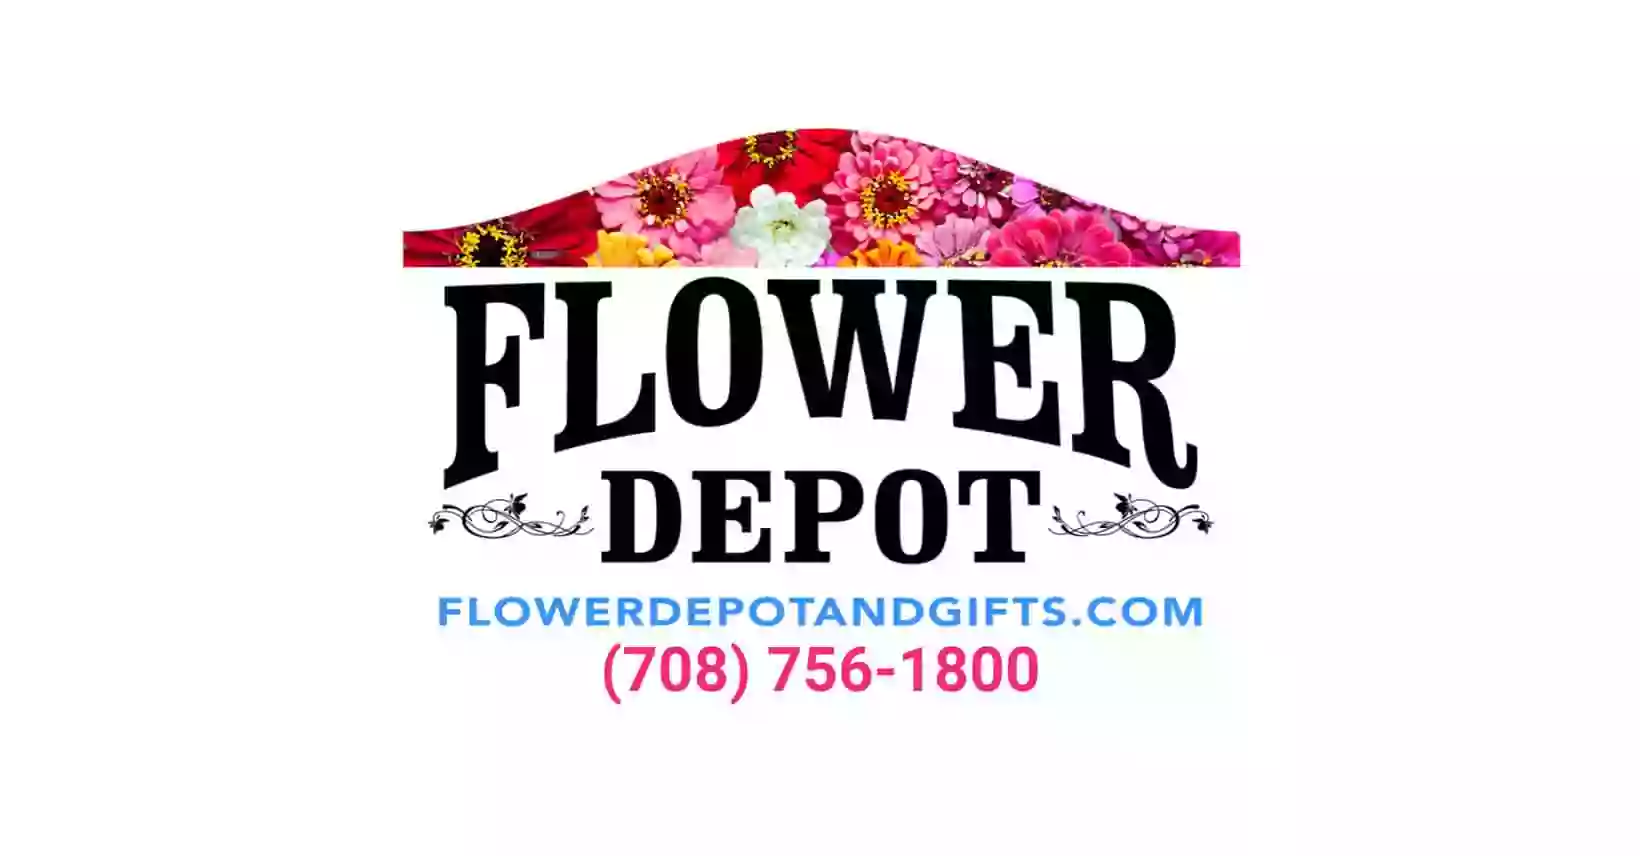 The Flower Depot, Inc.